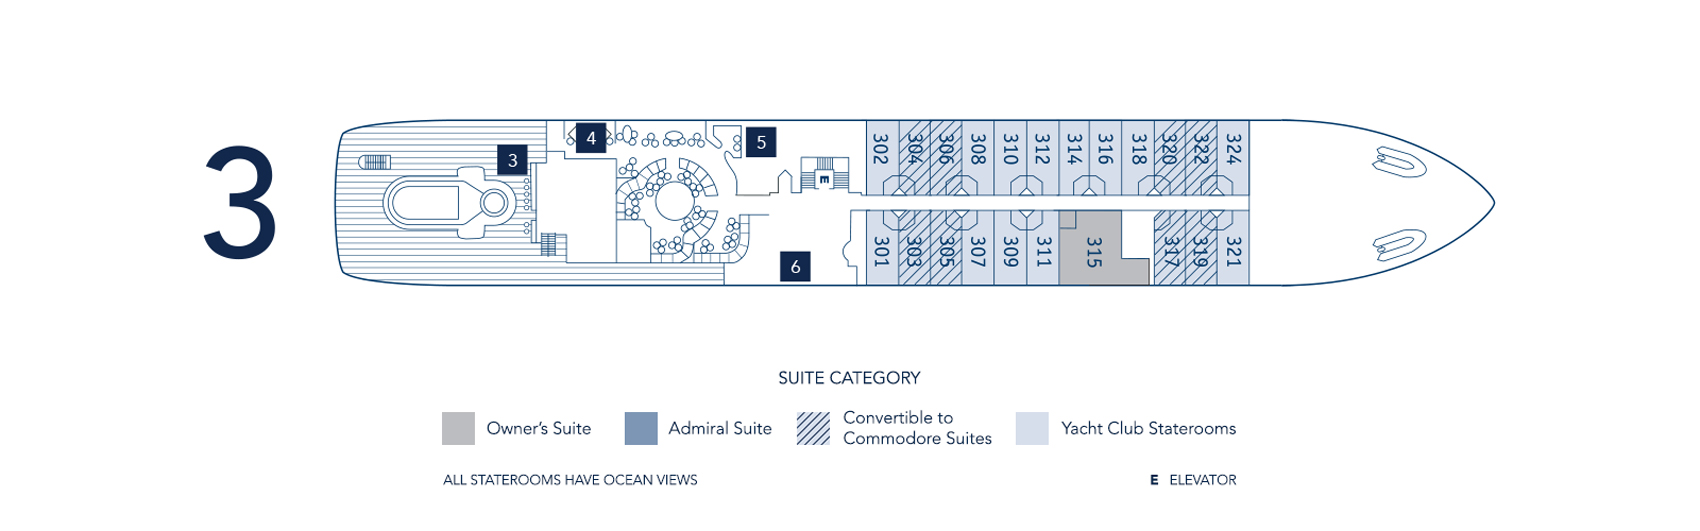 Deck Plans - SeaDream Yacht Club